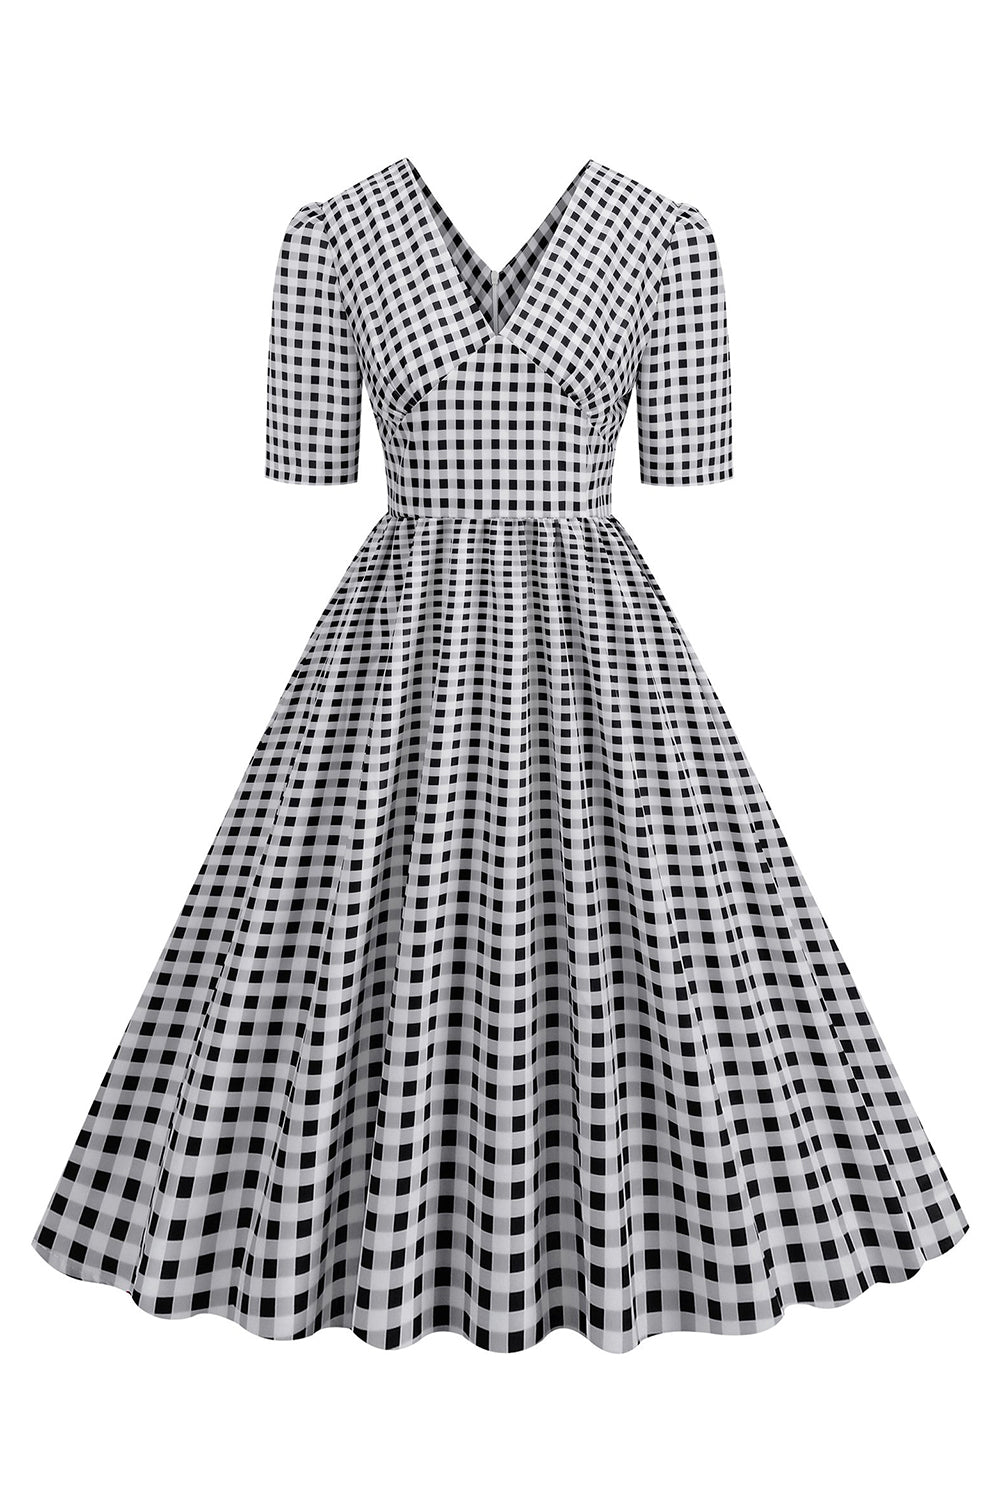 Sort plaid V-hals korte ærmer 1950'erne kjole